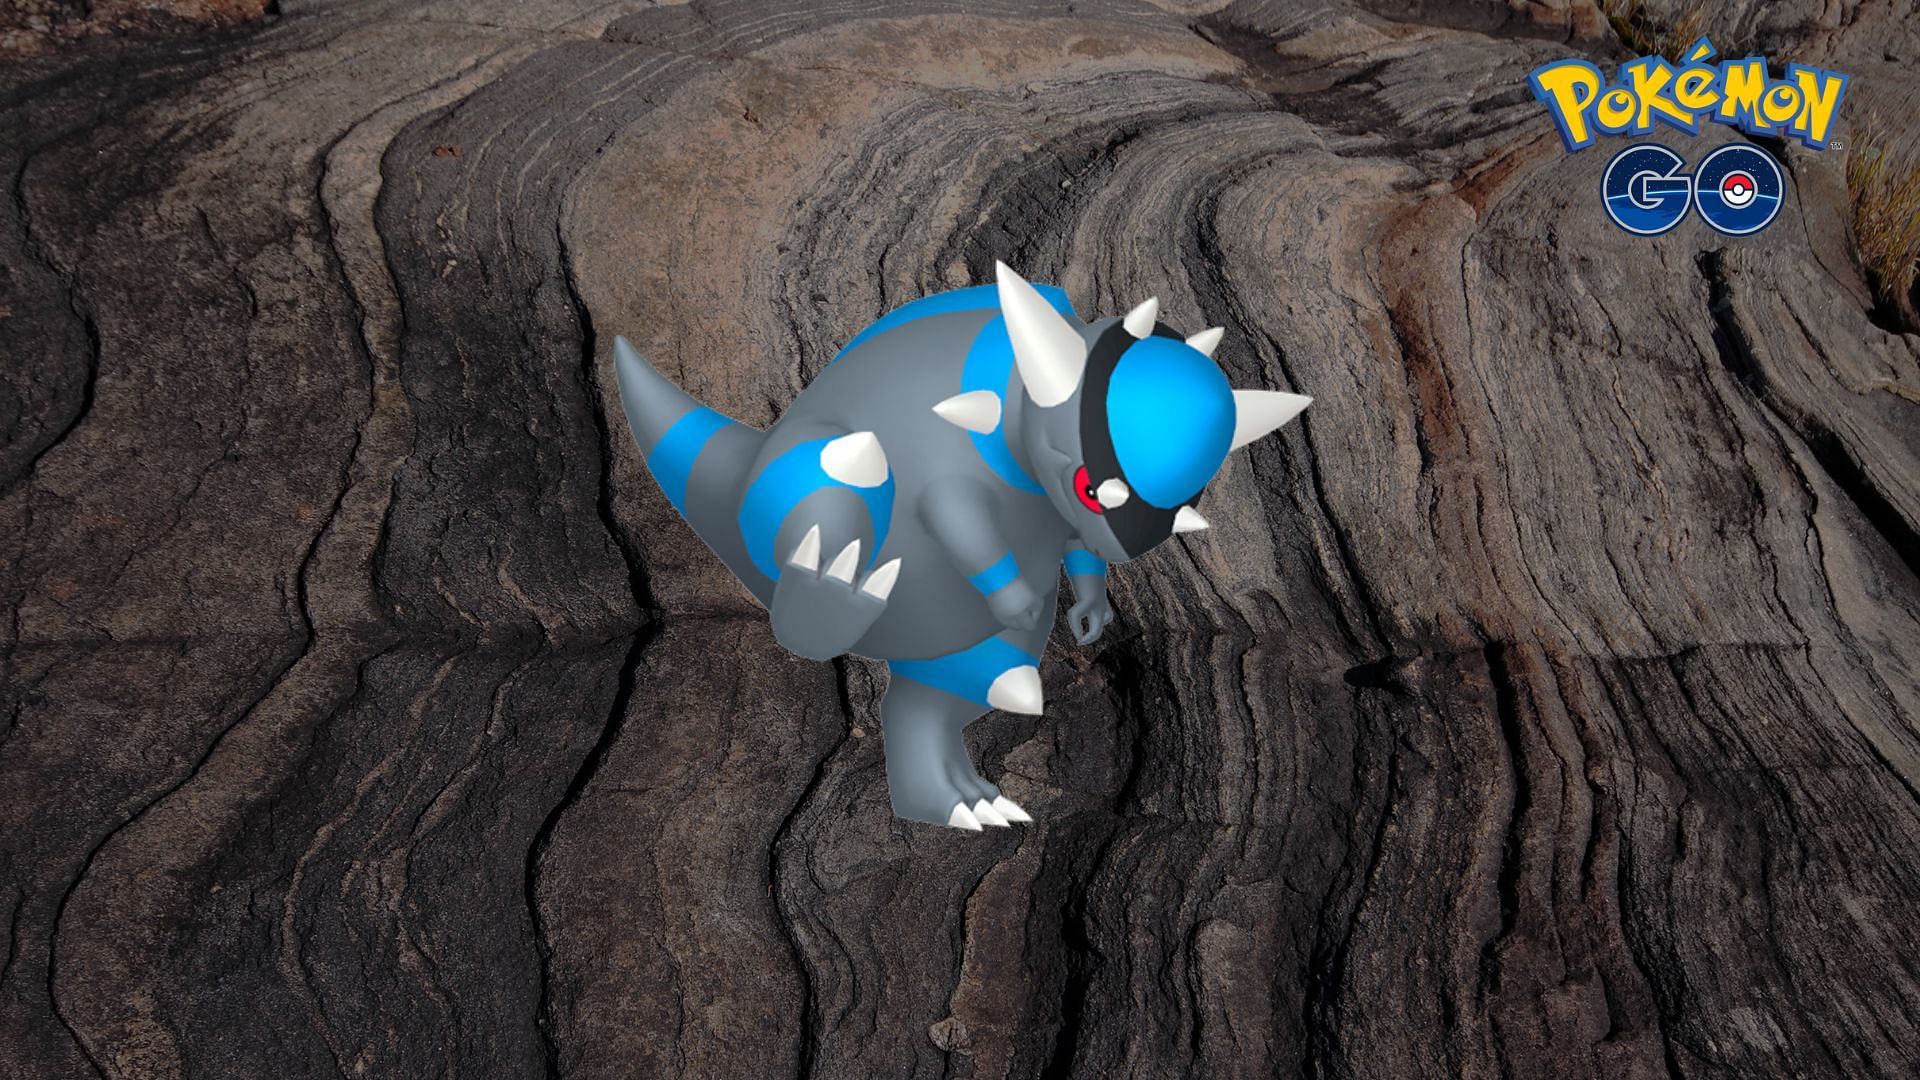 Rampardos (Image via The Pokemon Company)